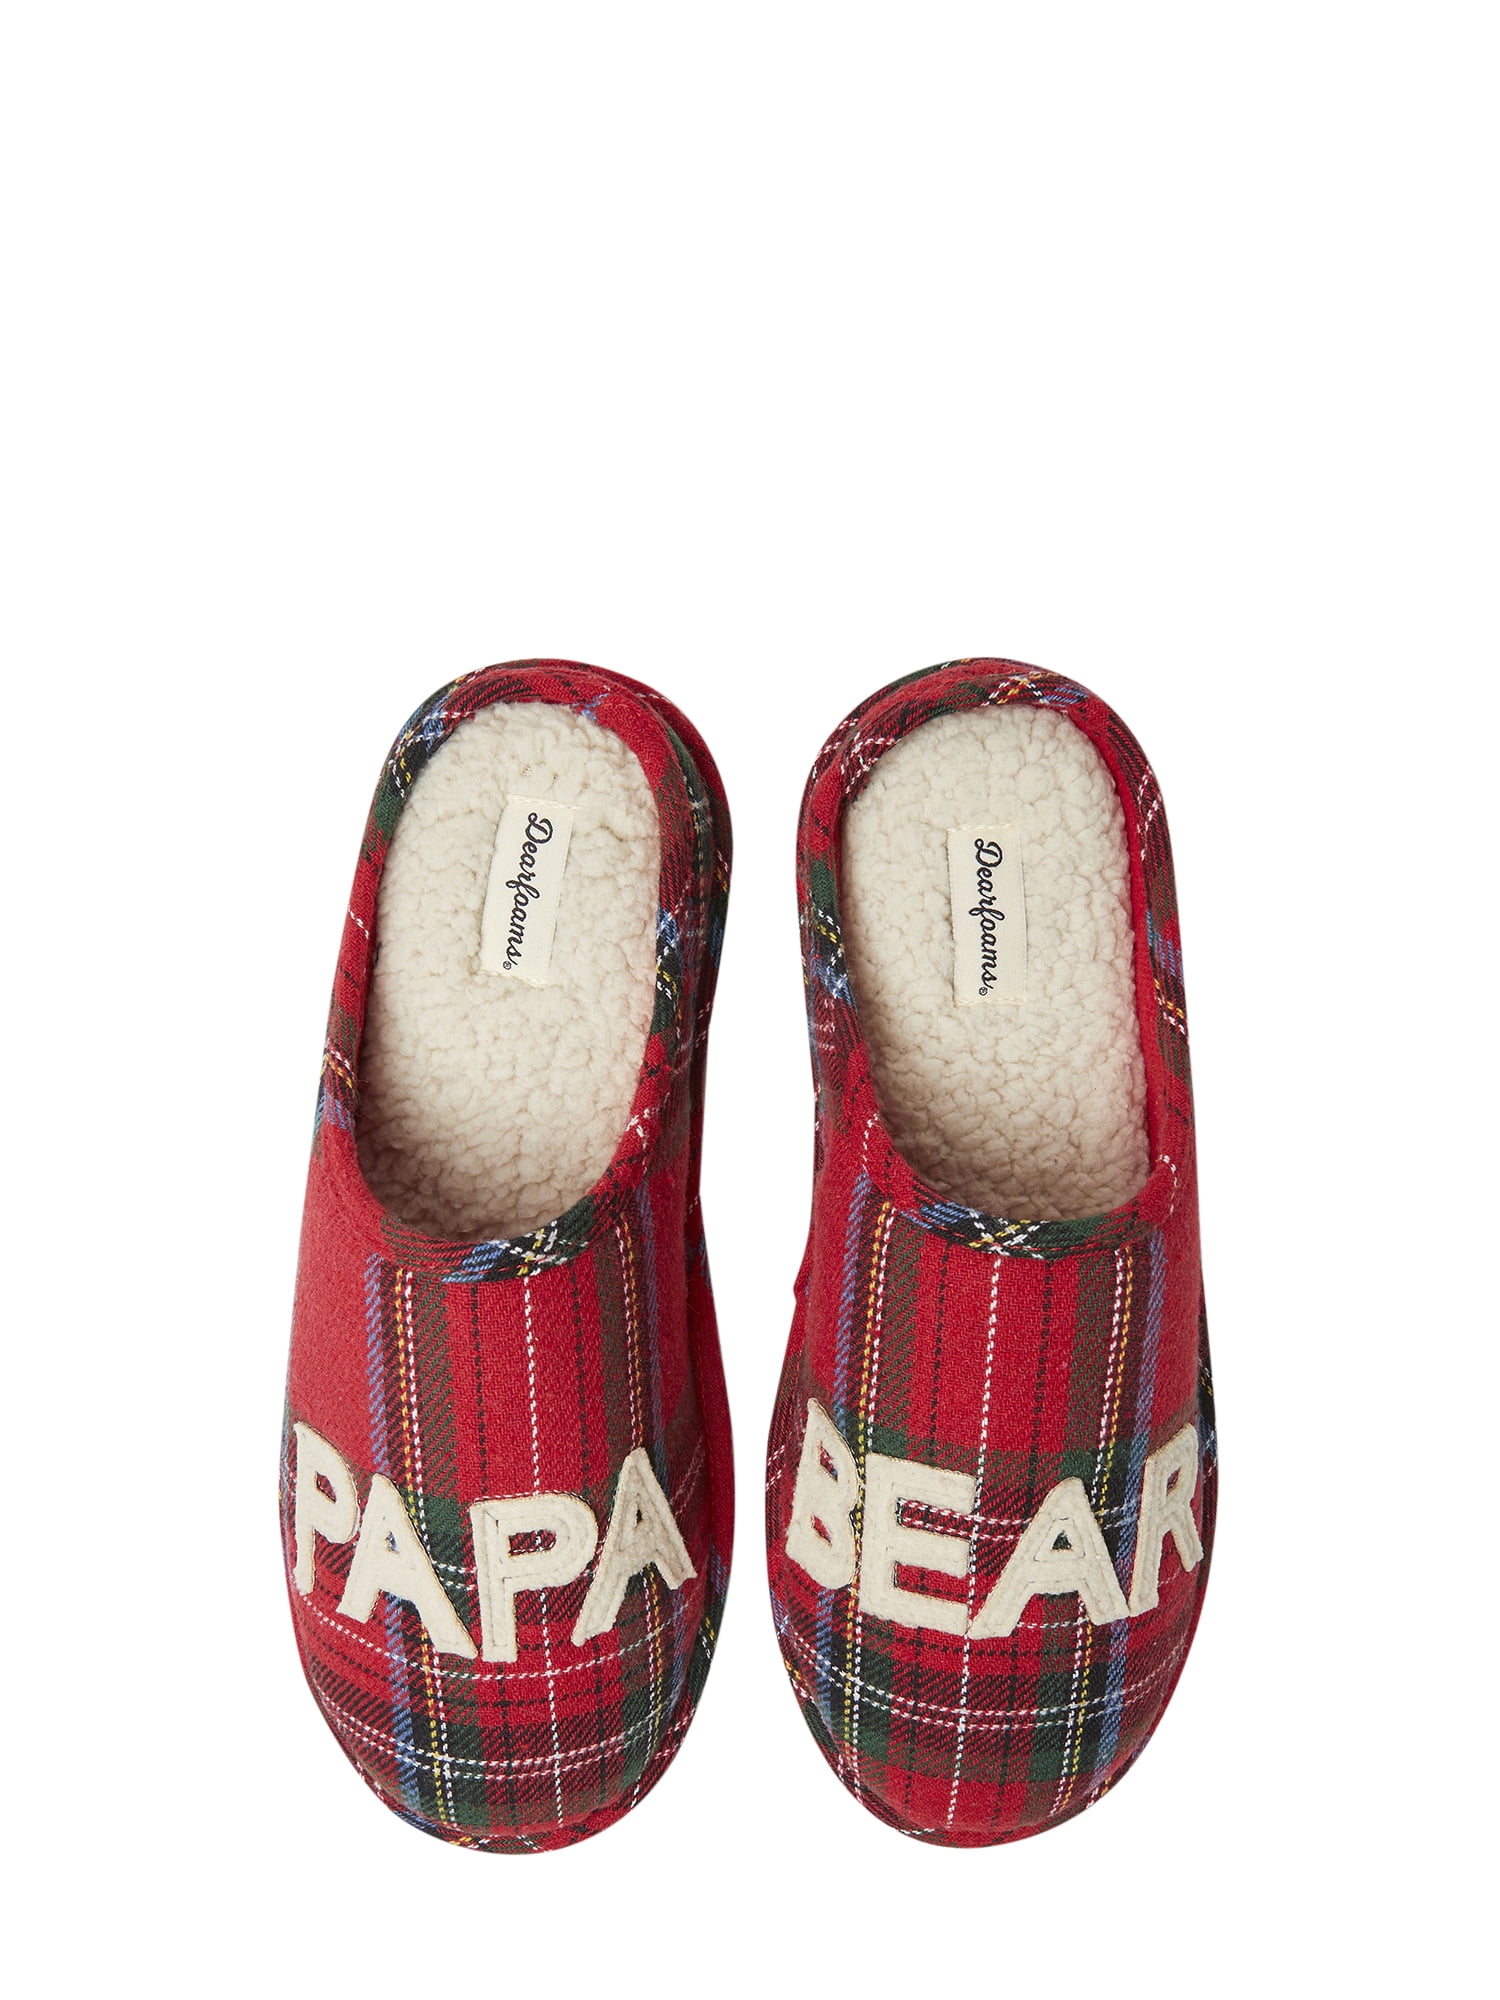 dearfoam slippers walmart